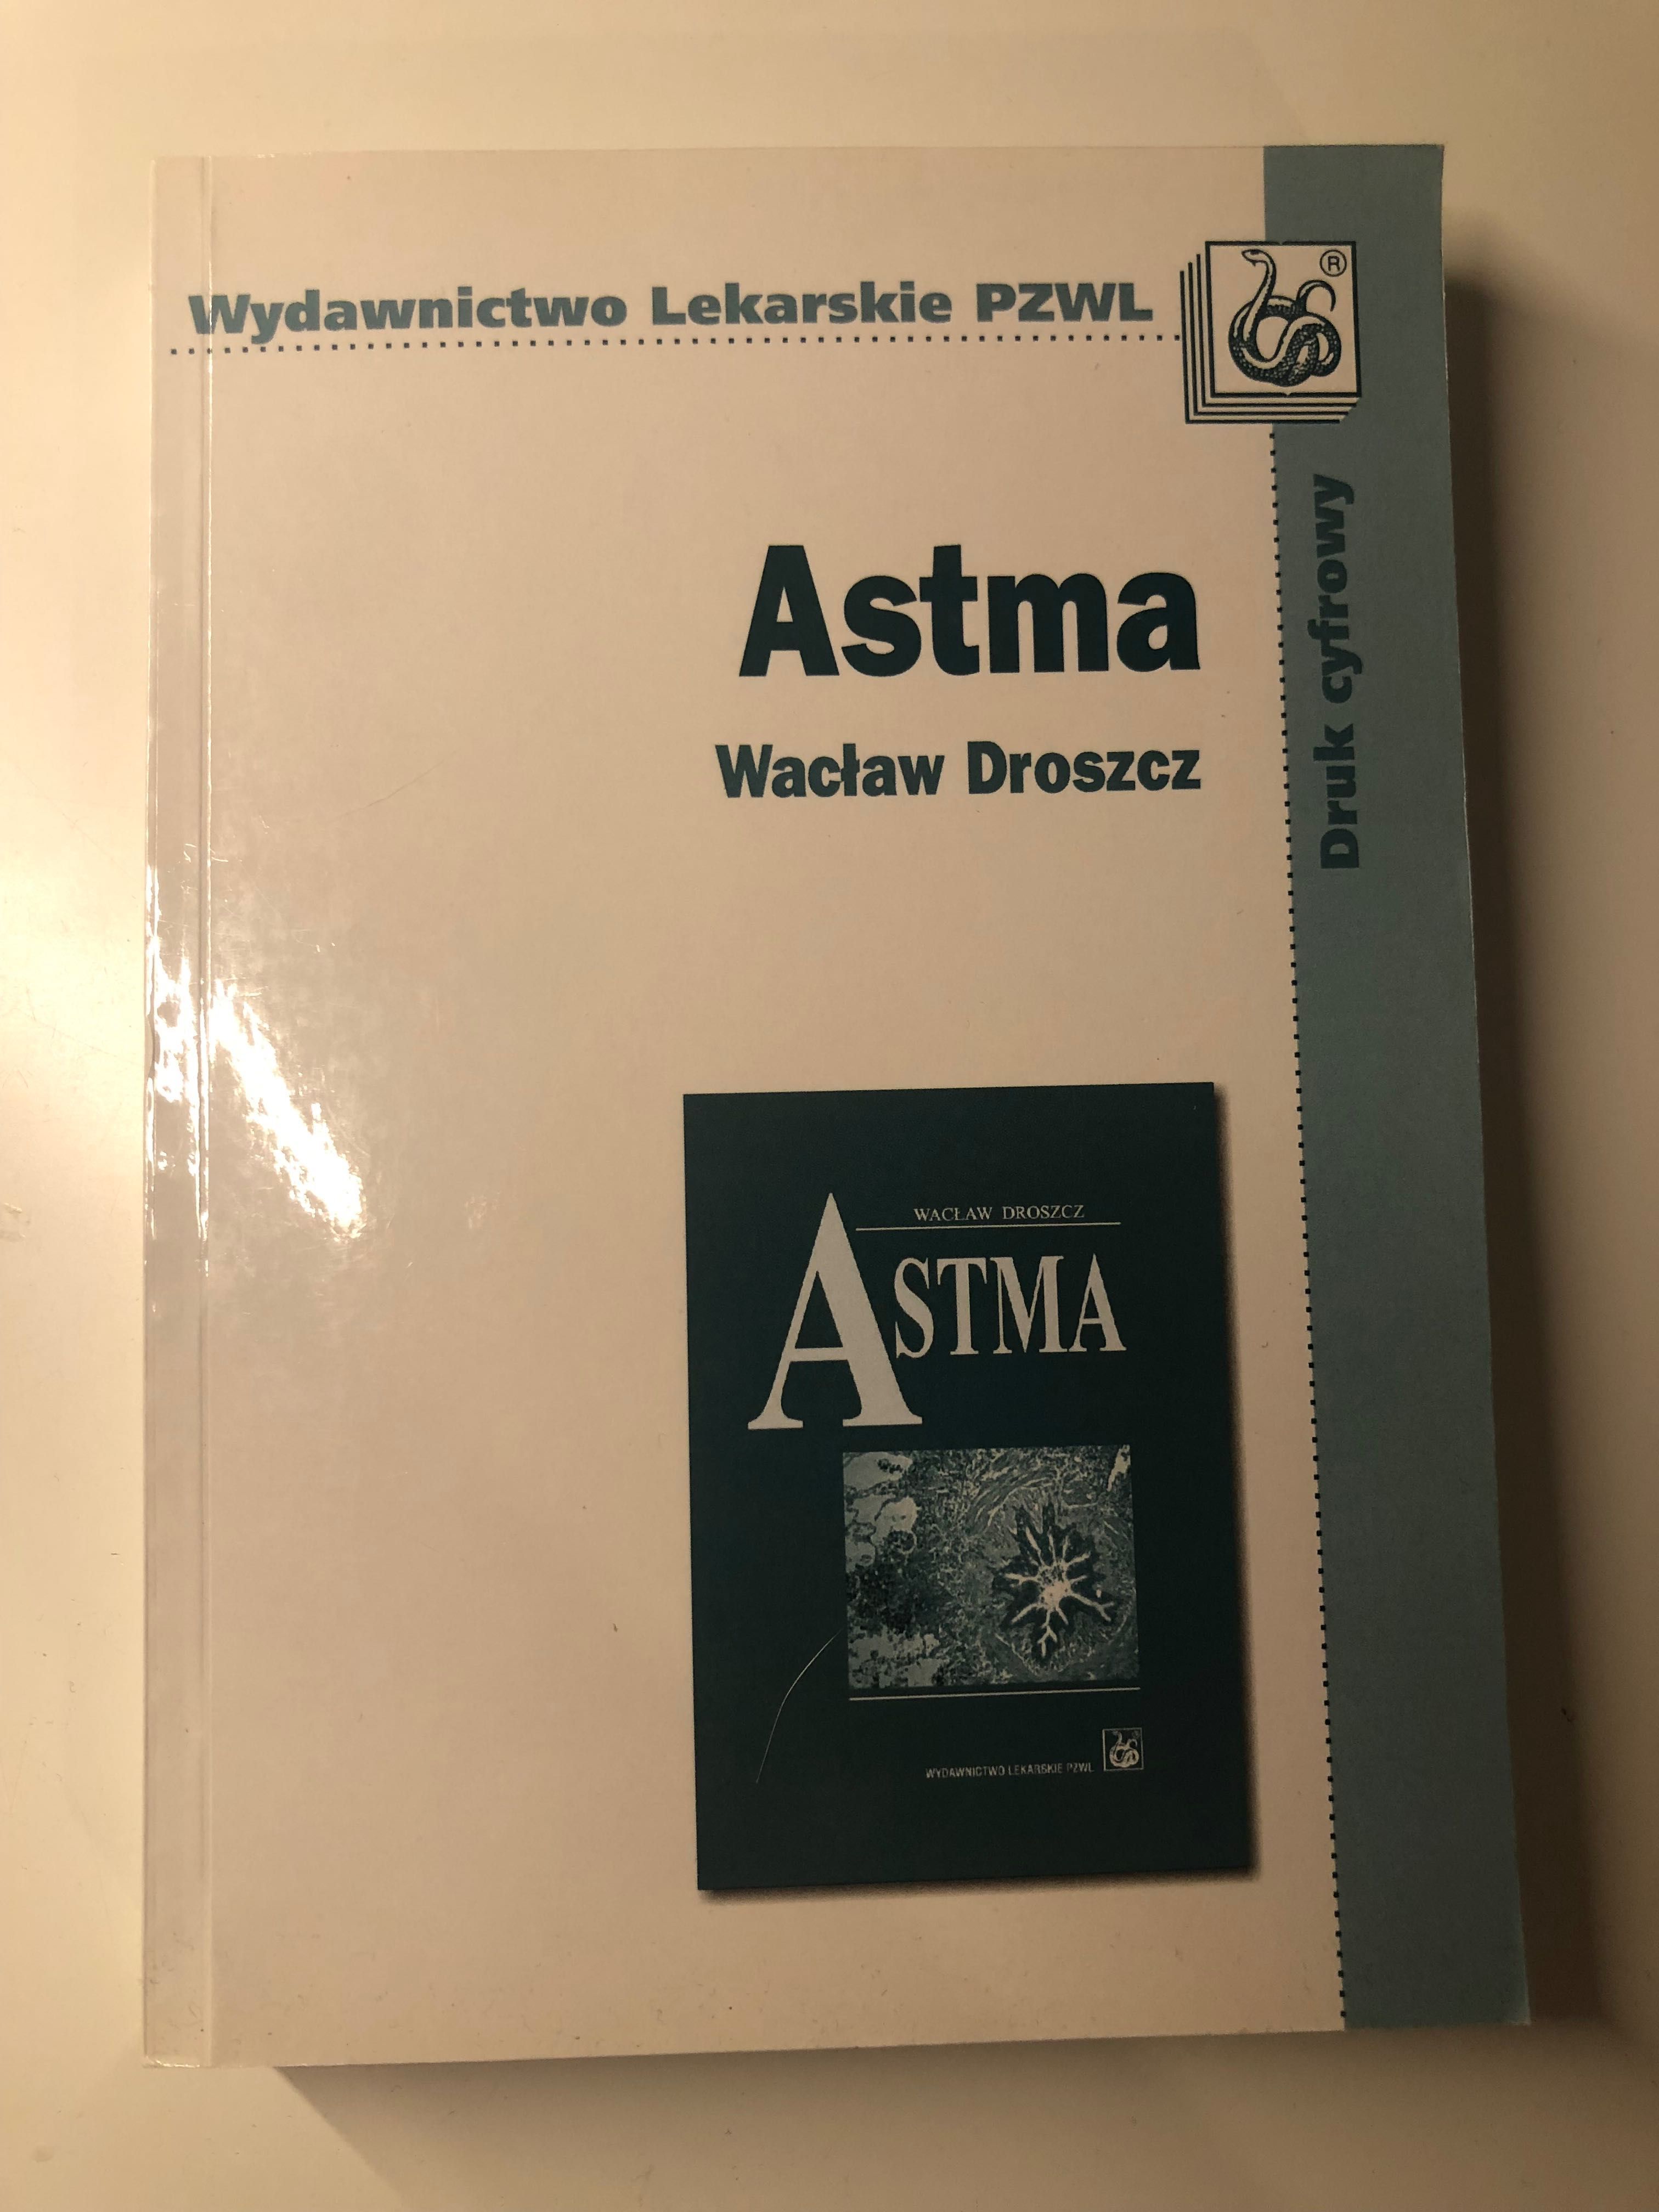 Astma Wacław Droszcz